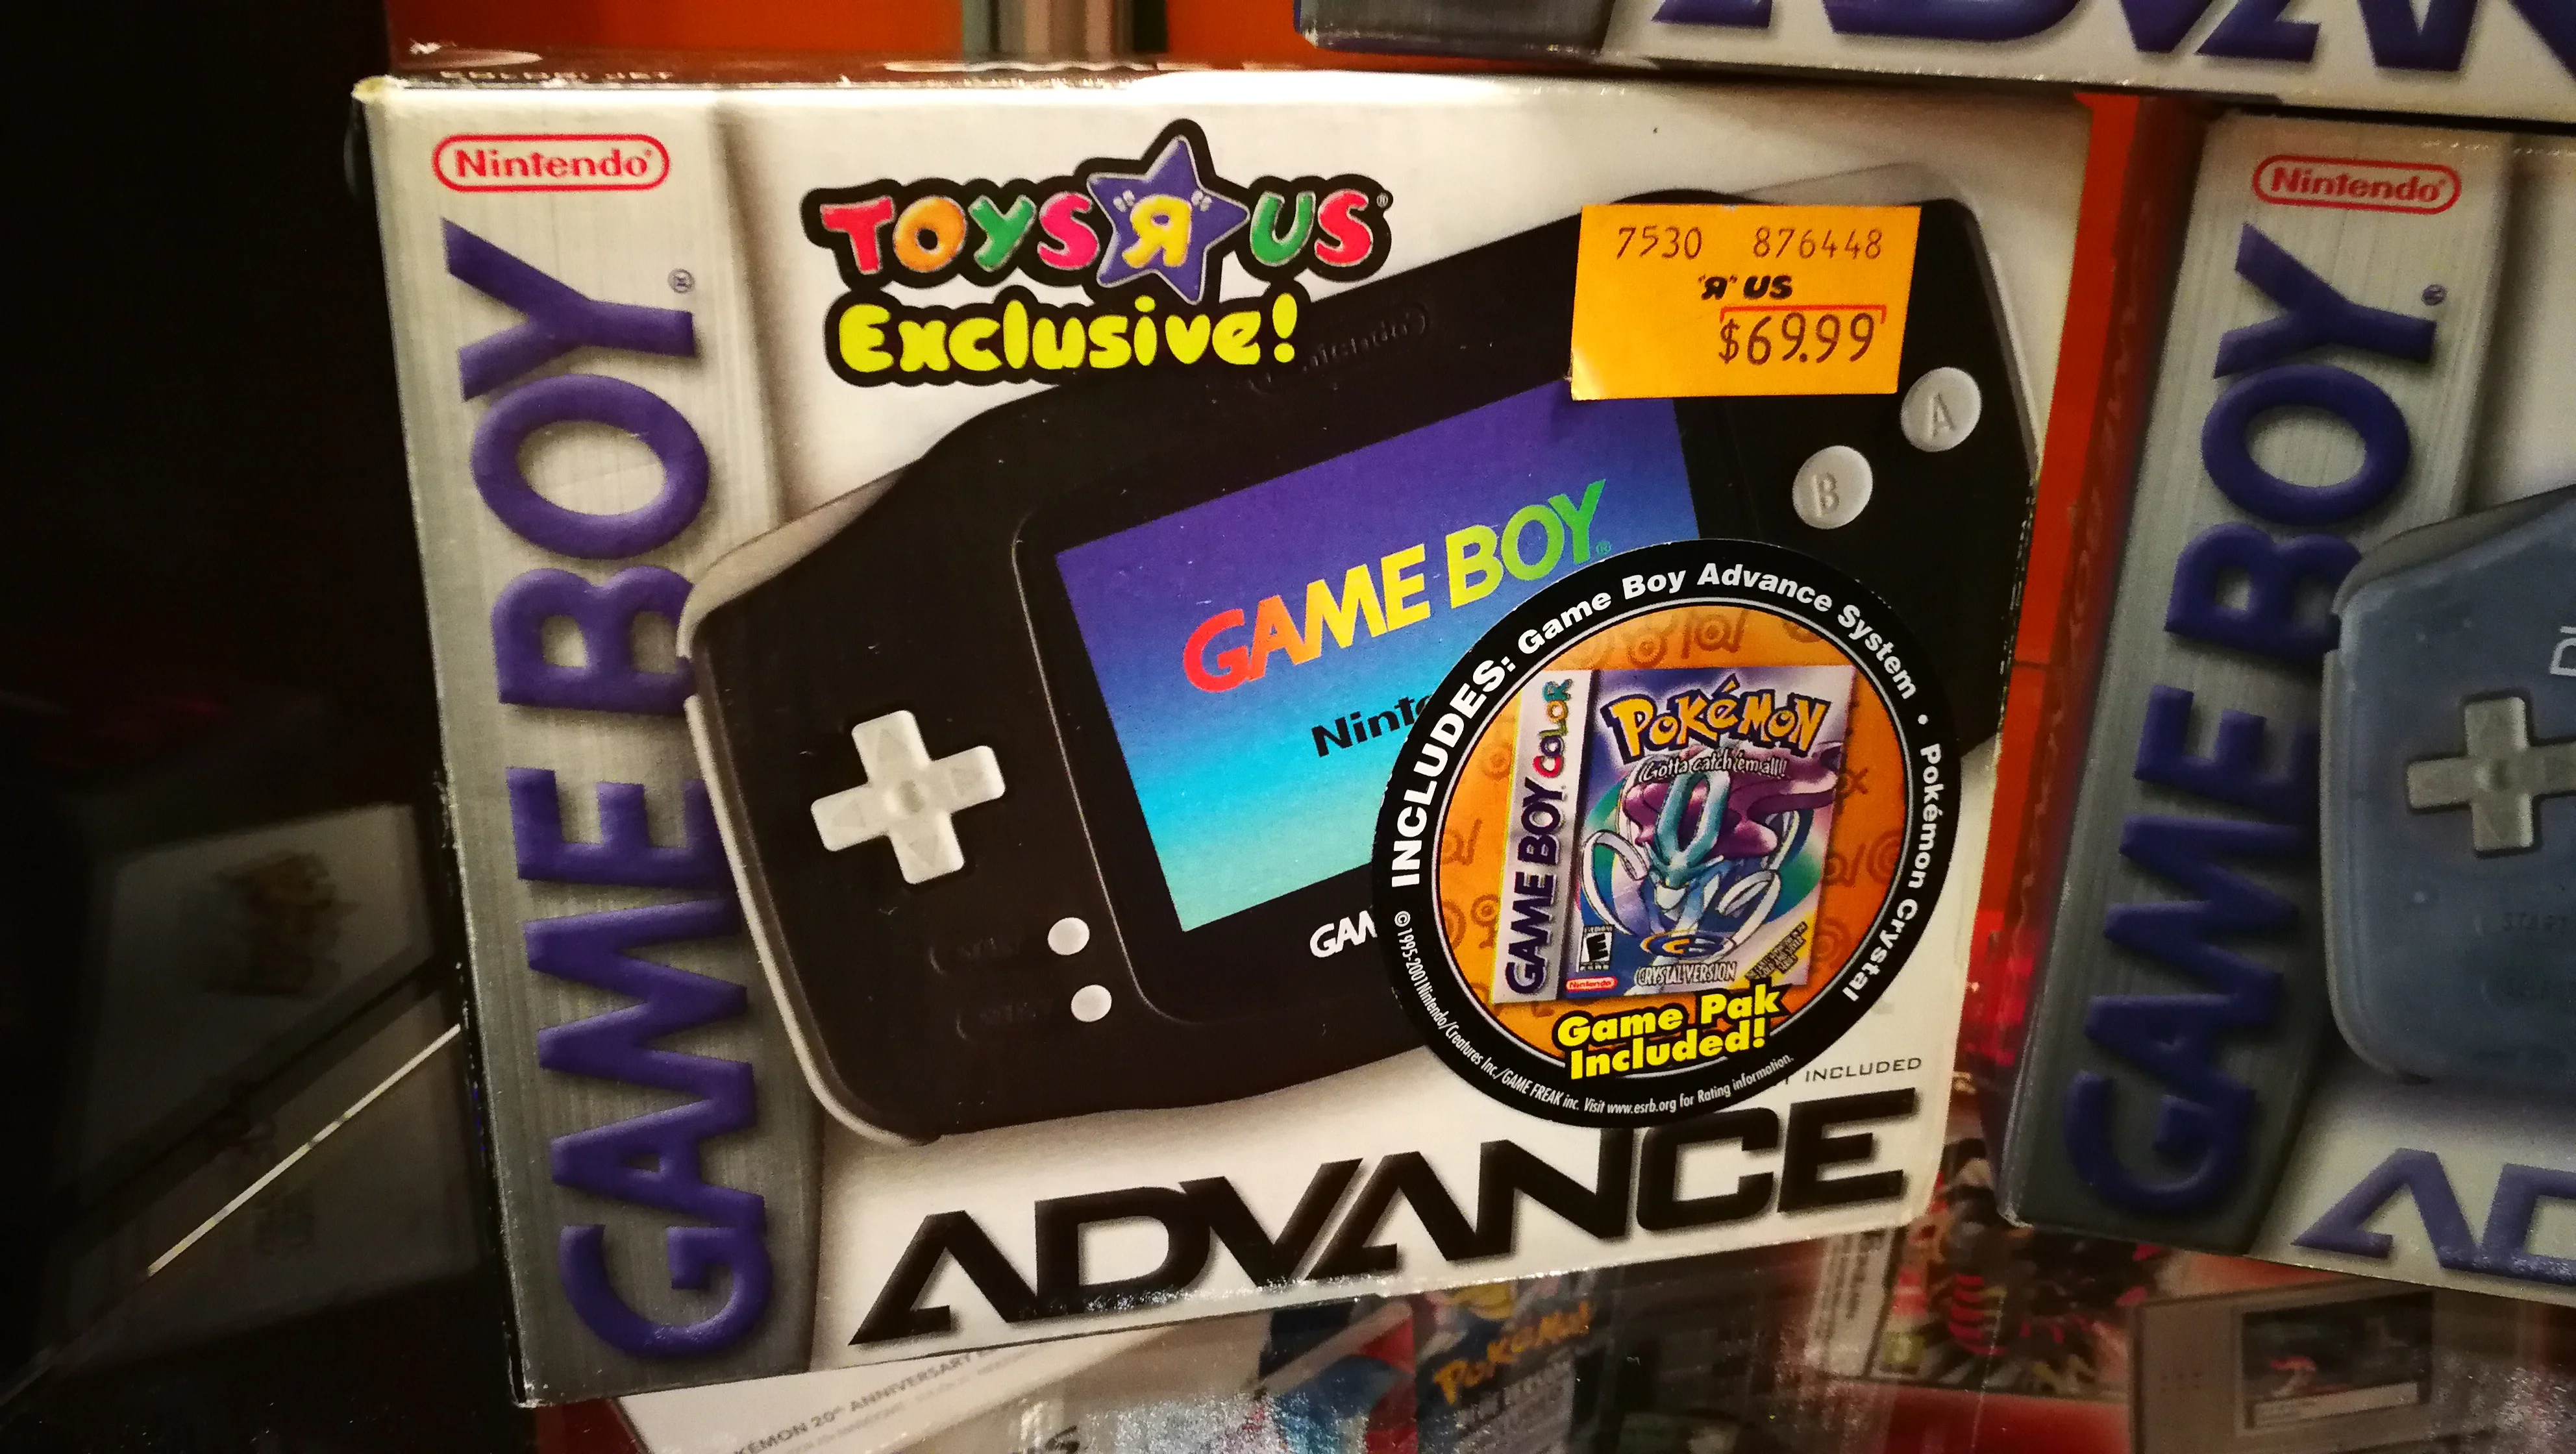  Nintendo Game Boy Advance Black Toys R Us + Pokemon Bundle